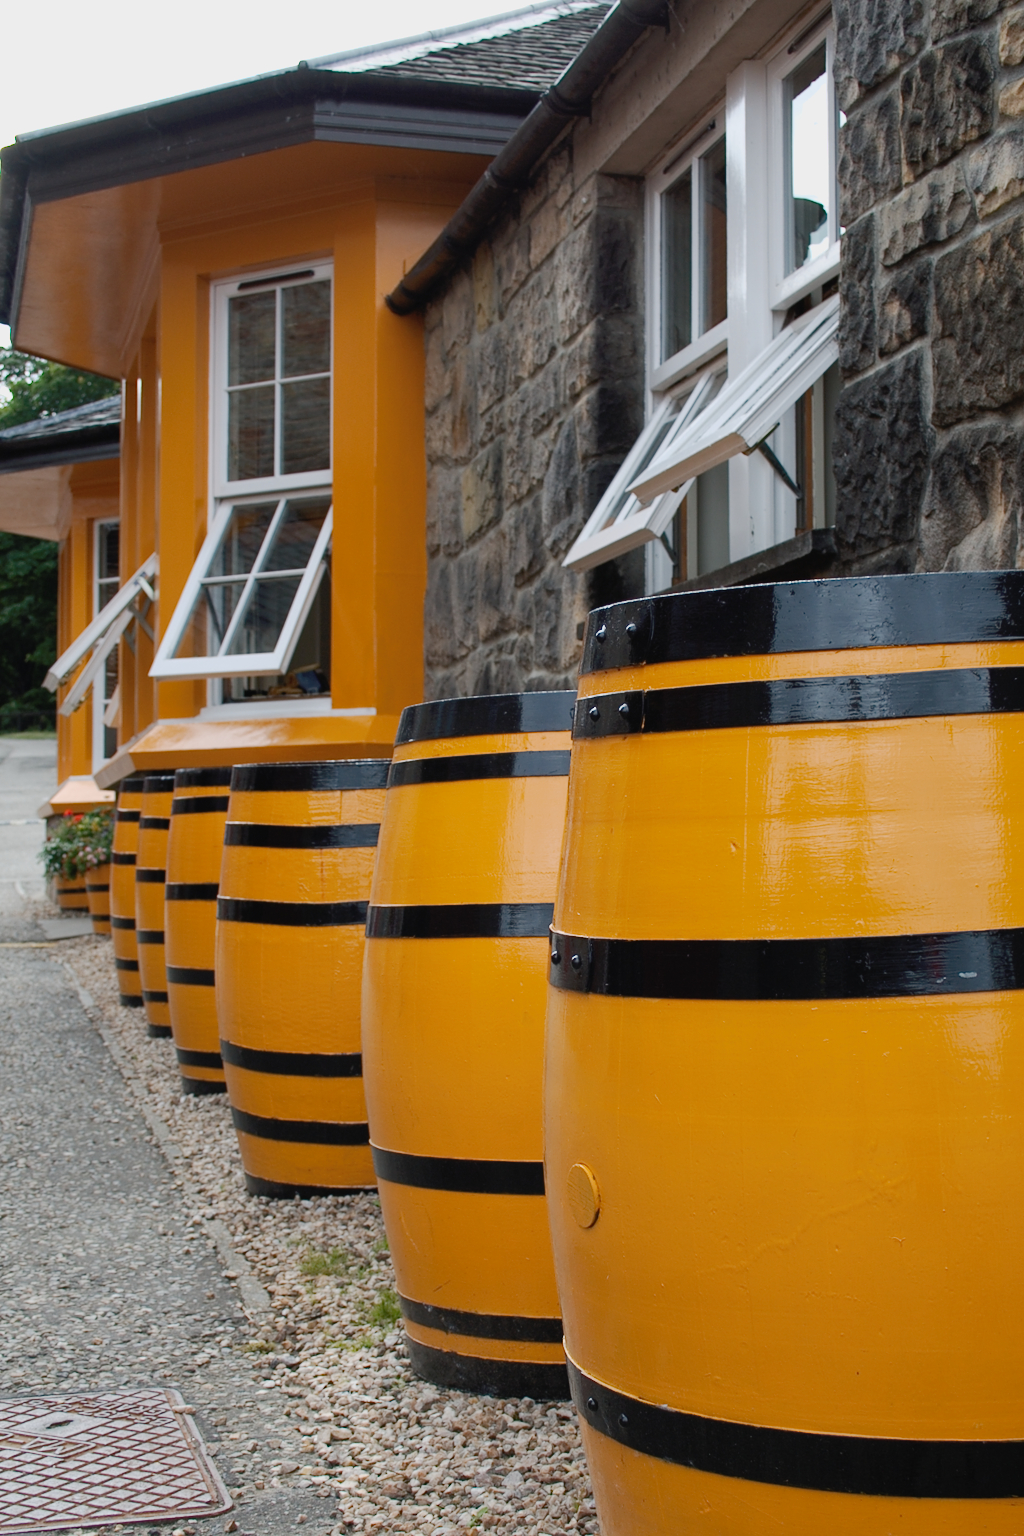 Urlaub in Schottland Teil 1 - Glenmorangie Distillery Fässer - Zebraspider DIY Anti-Fashion Blog